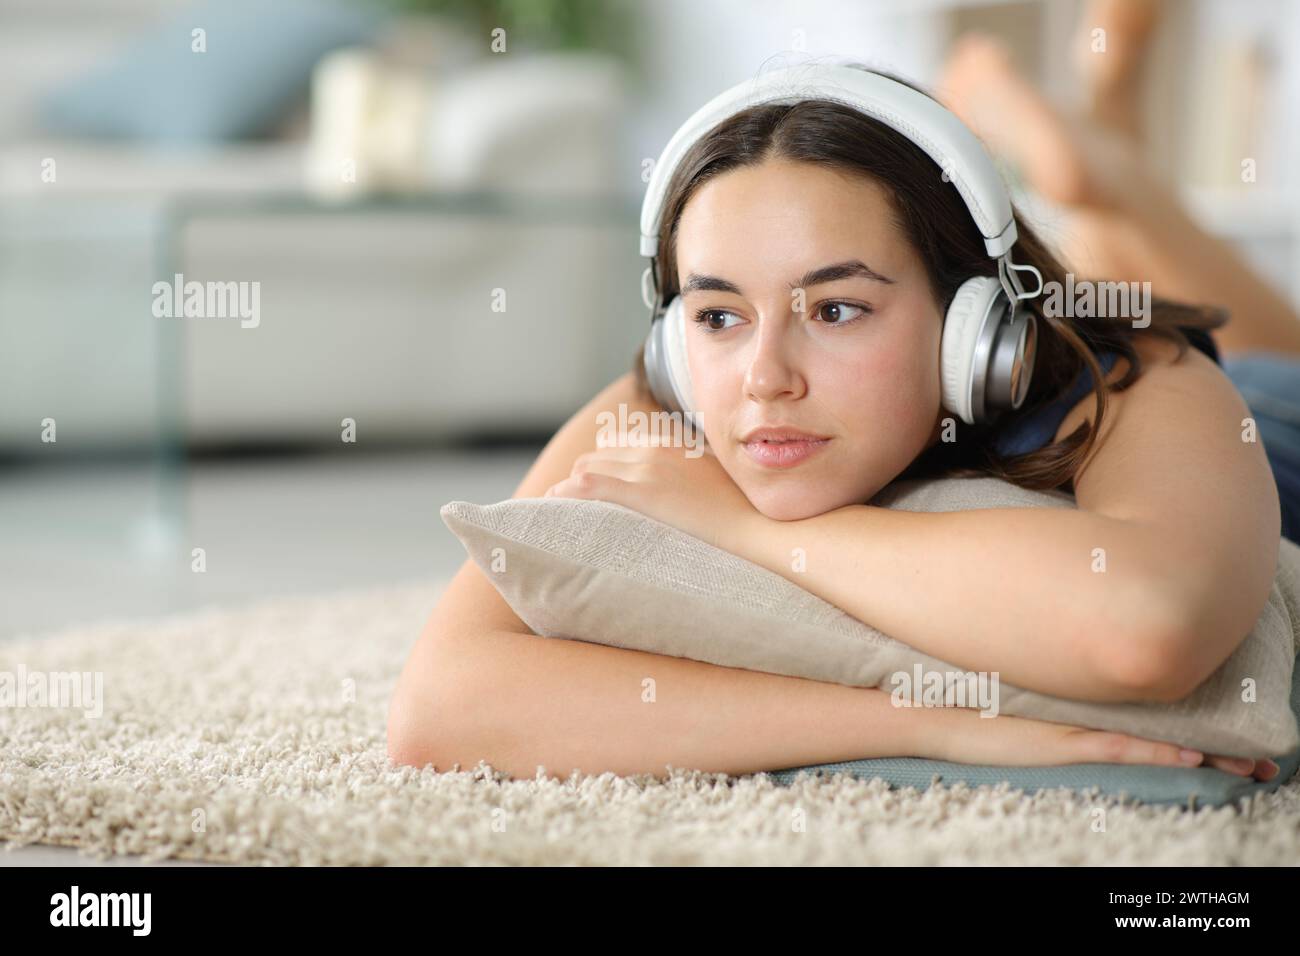 Nachdenkliche Frau mit Kopfhörern, die Musik hört, die auf einem Teppich liegt Stockfoto